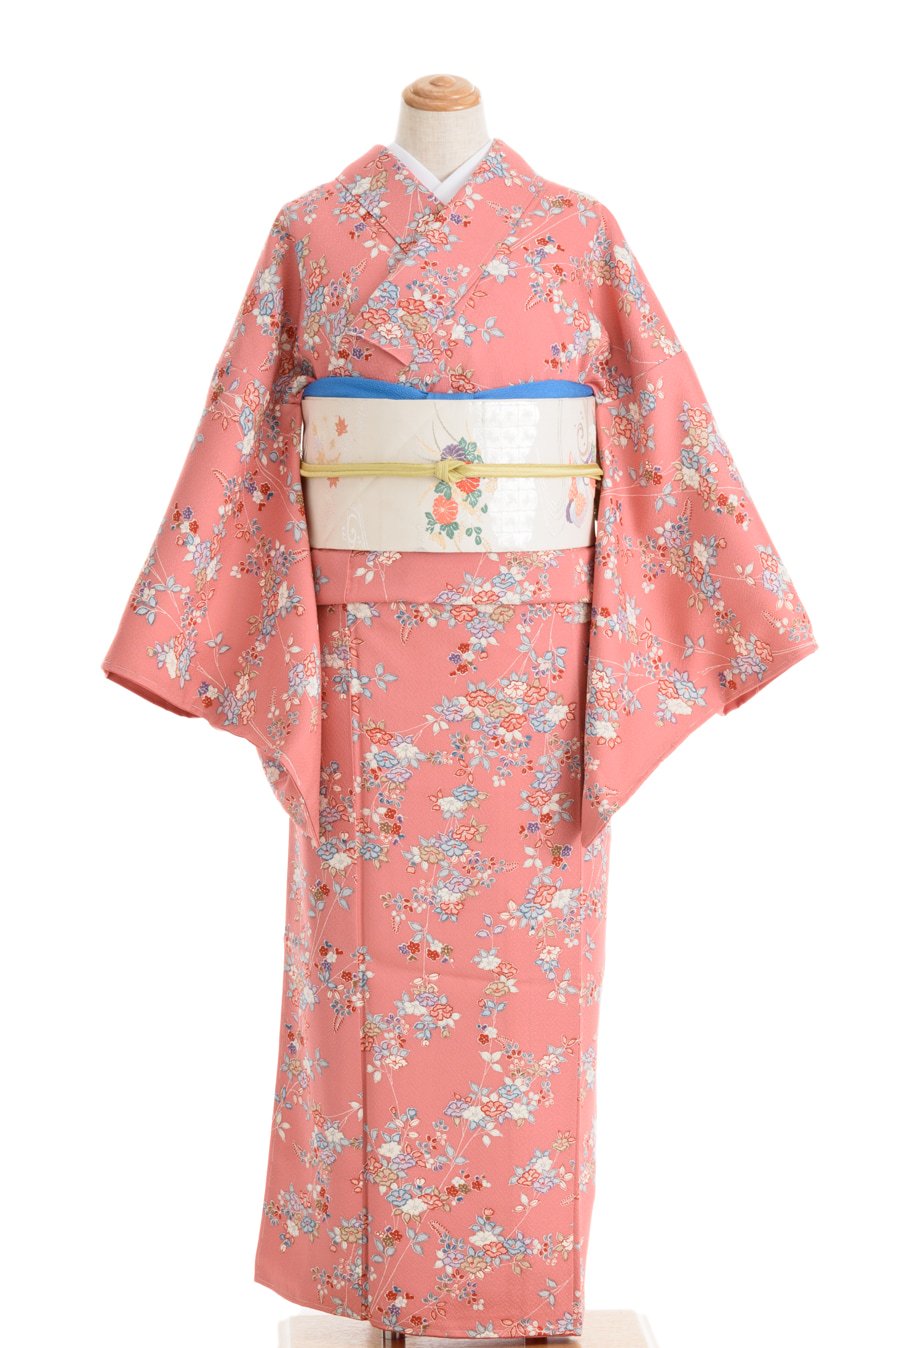 ピンク色の地 小さな椿と梅 からん アンティーク着物 リサイクル着物の通販サイト